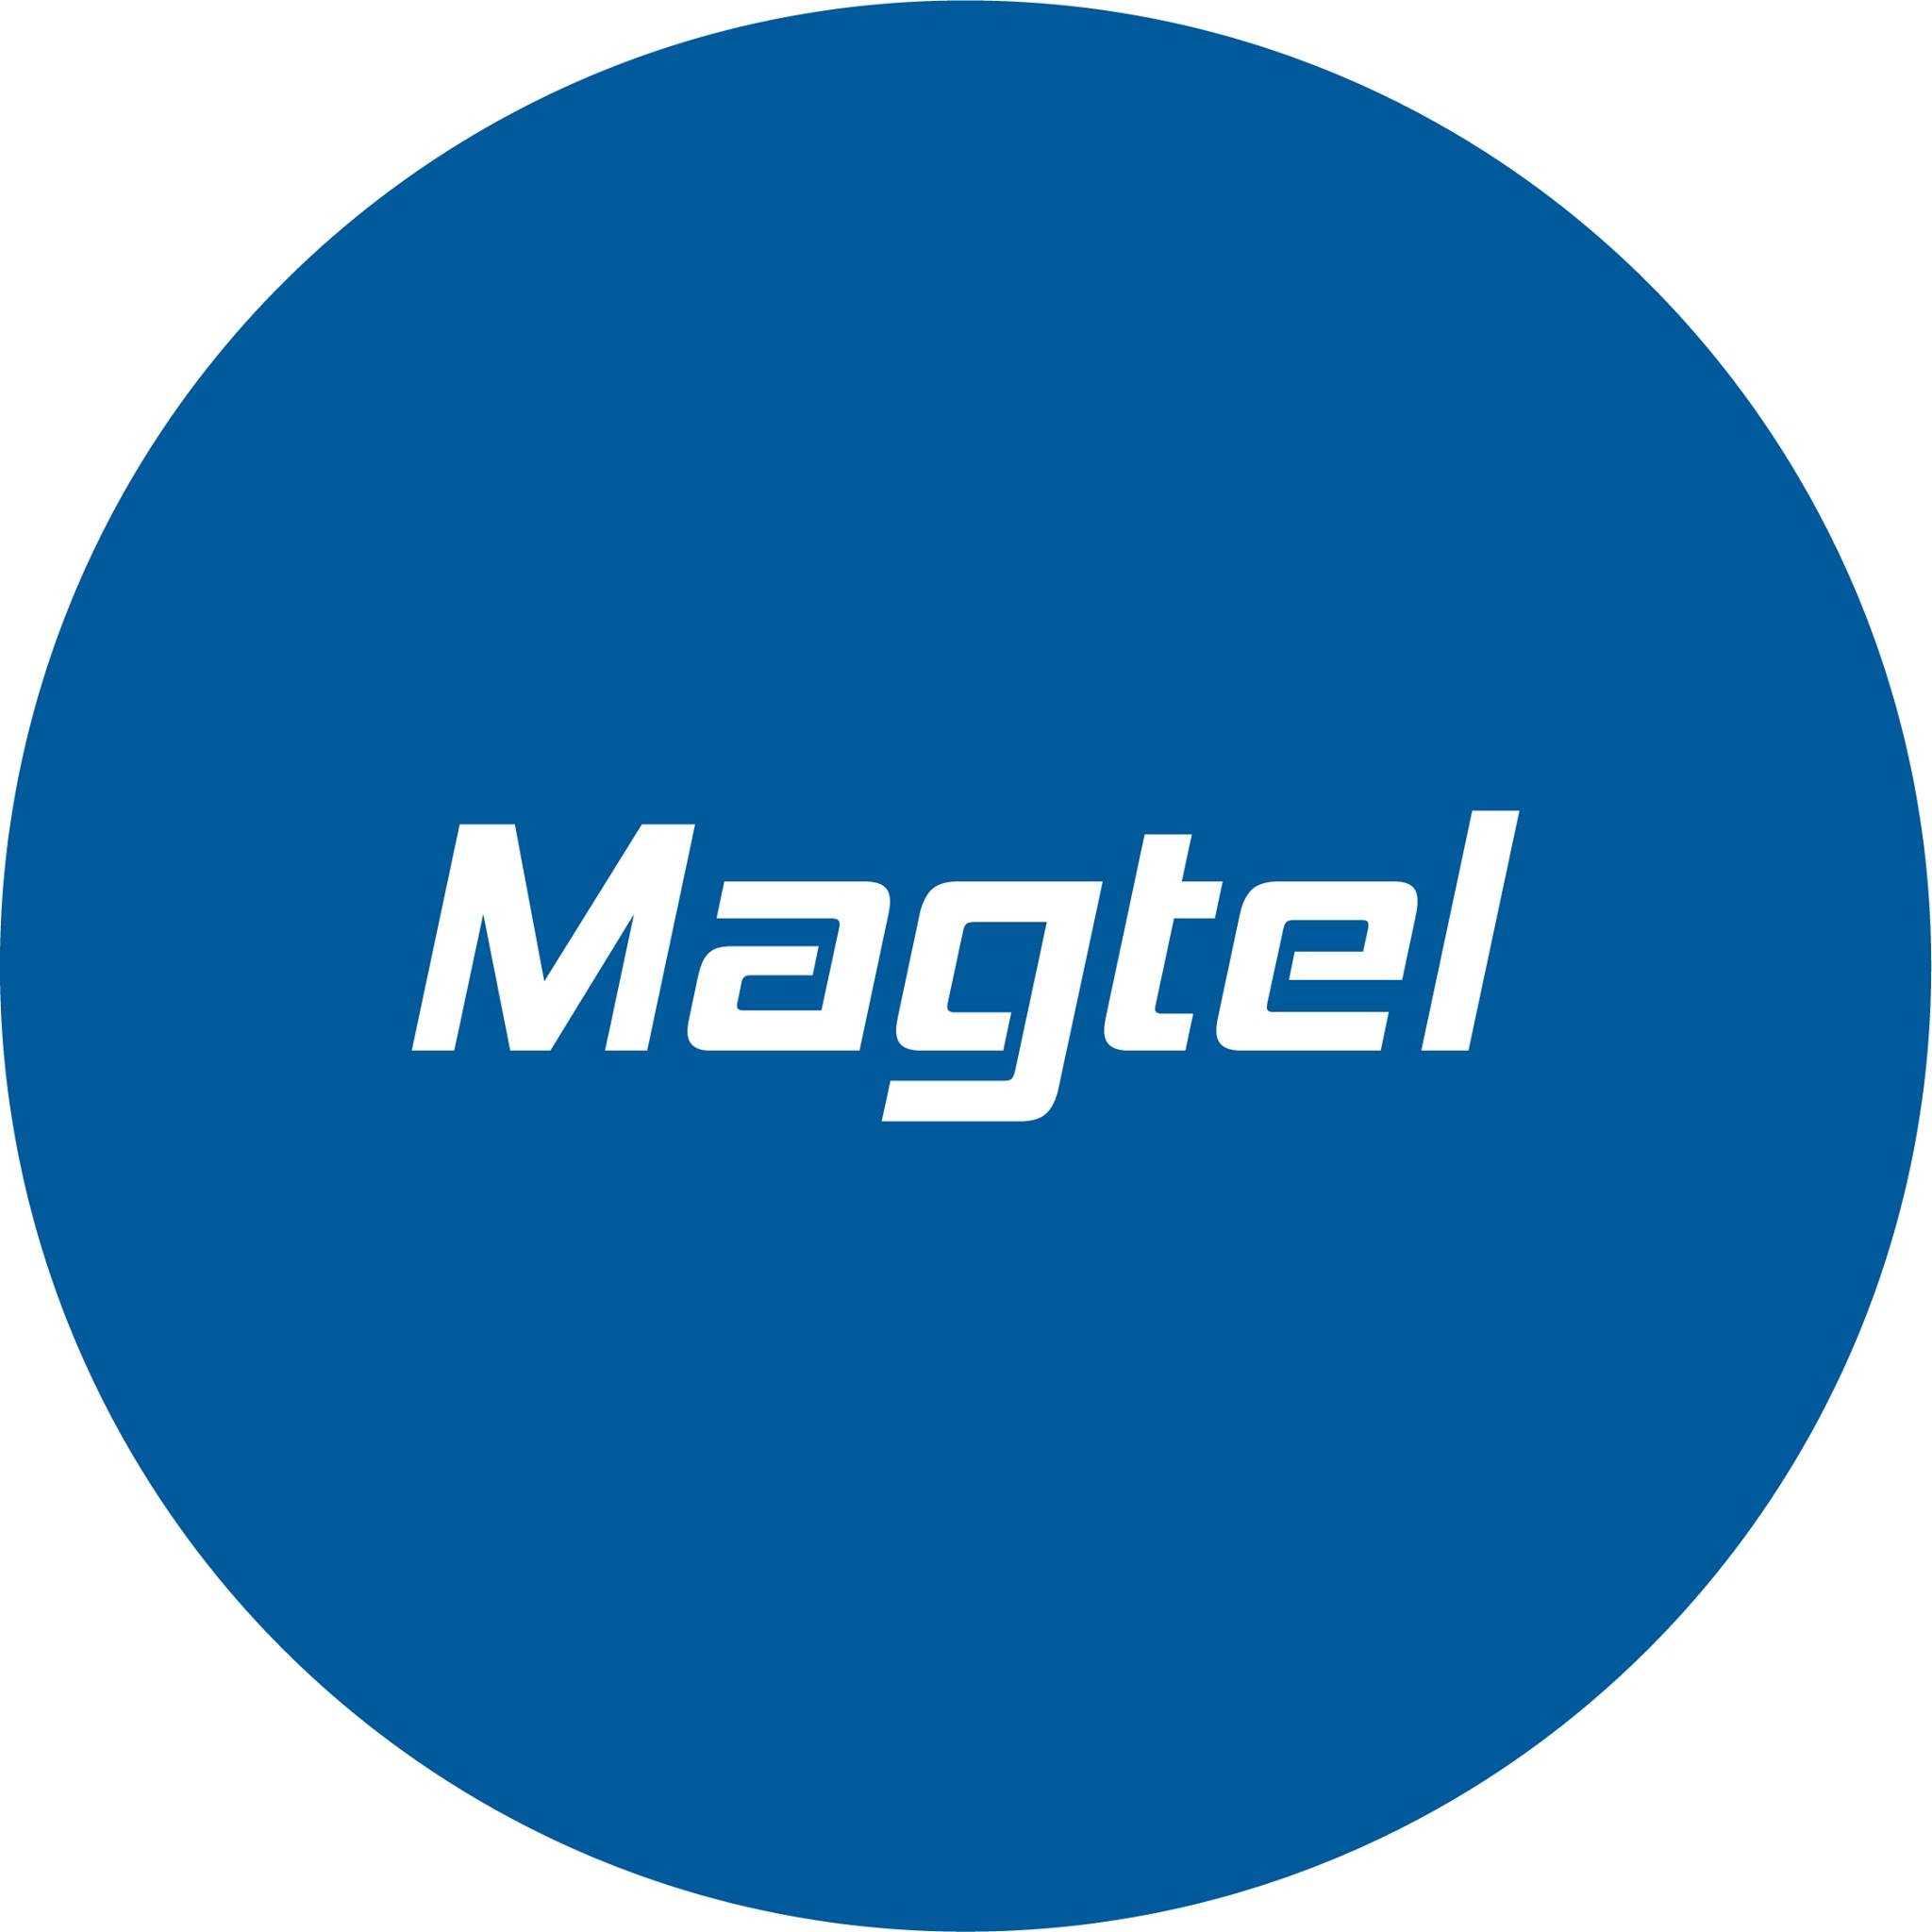 Magtel se une a otras empresas para poner en marcha varias empresas de energías renovables